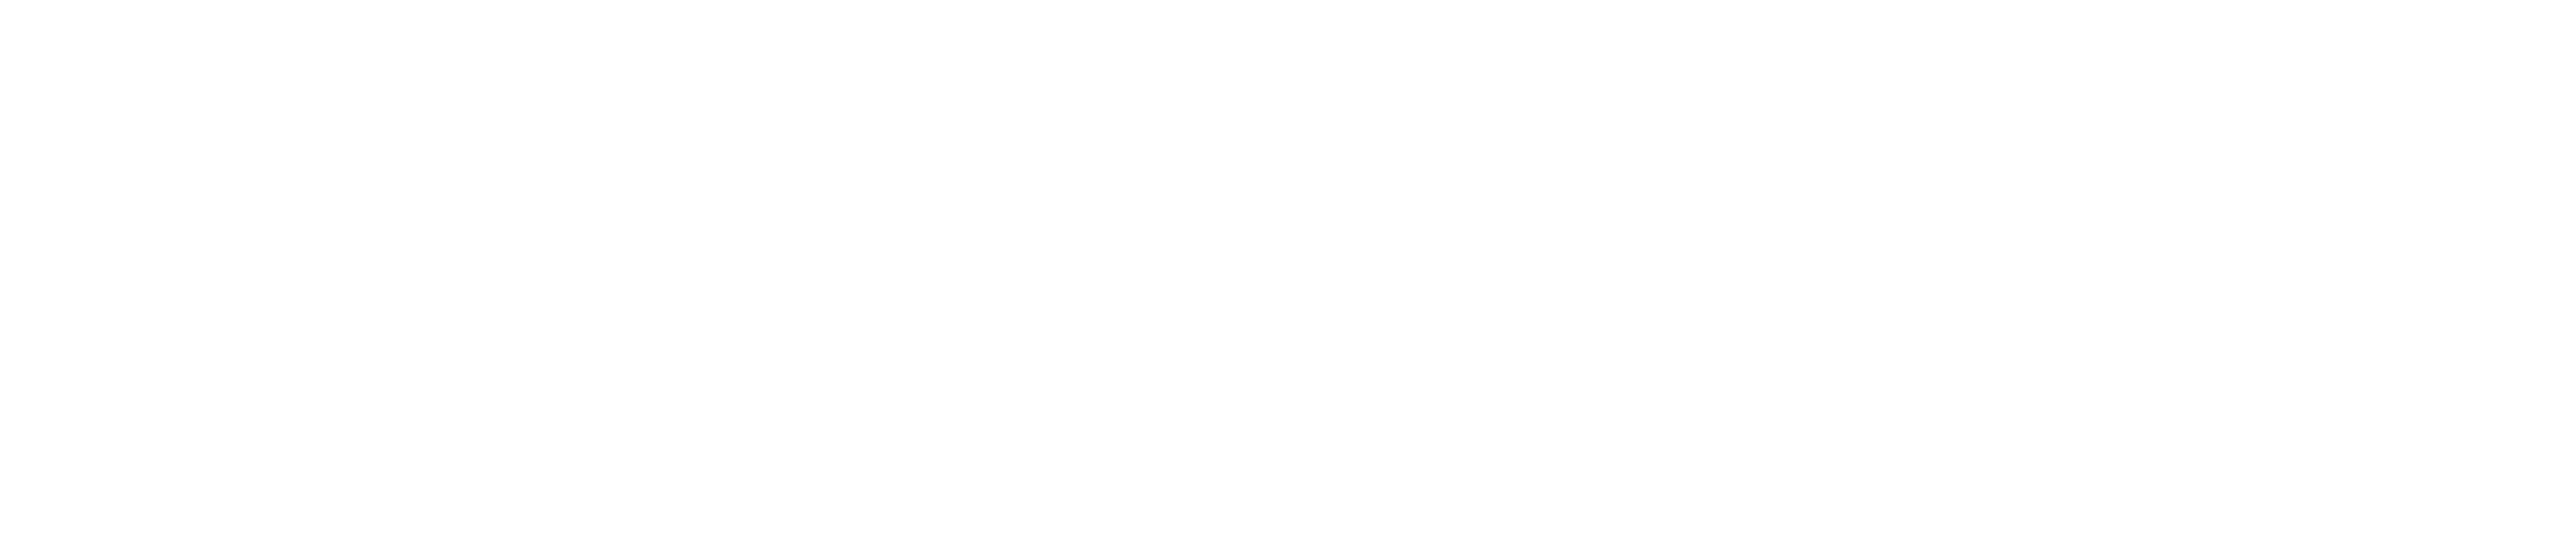 EP Films logo navbar